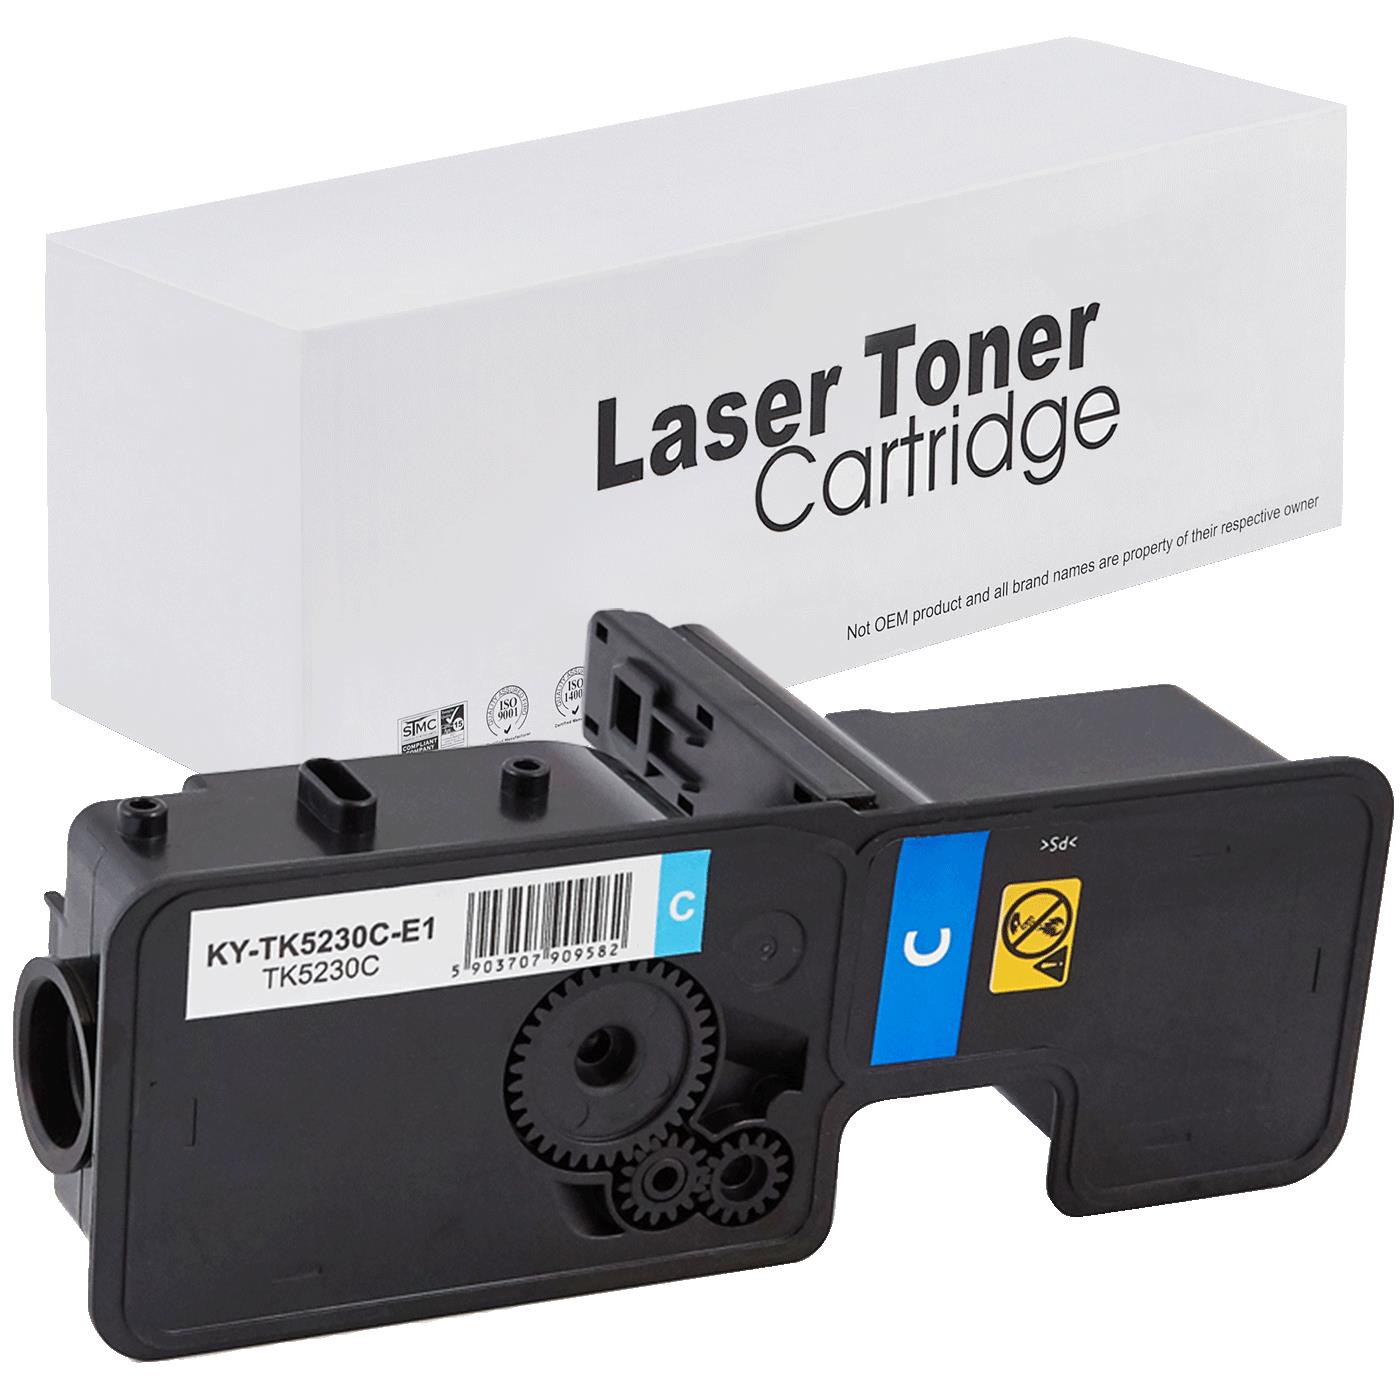 съвместима тонер касета за принтери и печатащи устройства на Kyocera Mita Ecosys P5021cdn Toner KY-TK5230C | TK5230C. Ниски цени, прецизно изпълнение, високо качество.